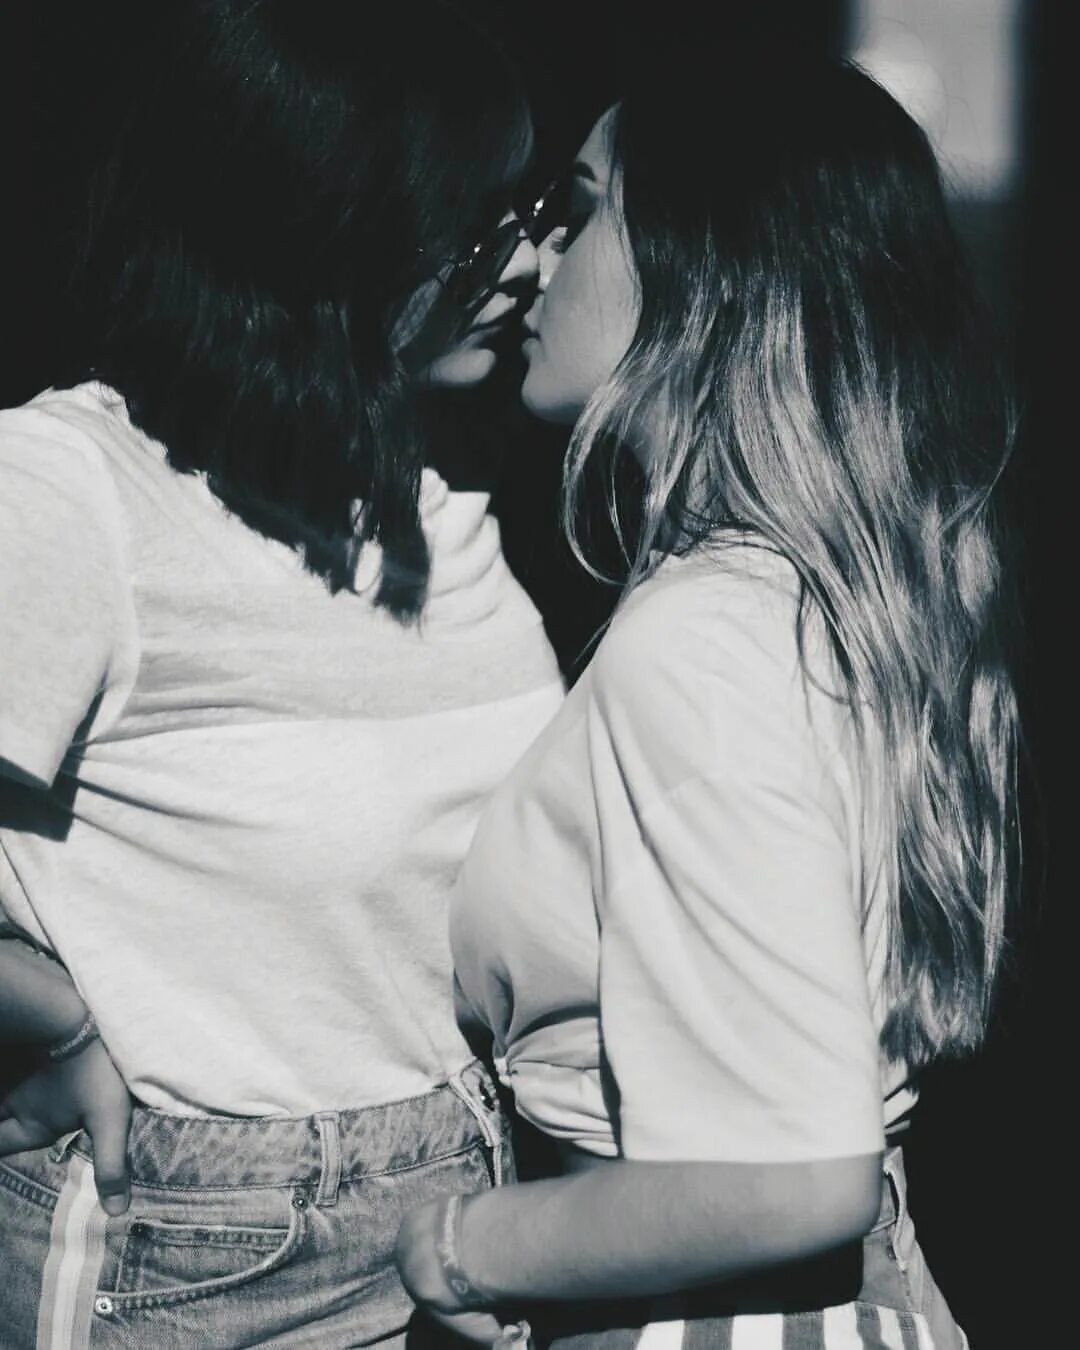 Maria lesbians. Поцелуй девушек. Две девушки любовь. Девушки целуются. Любовь двух девочек.